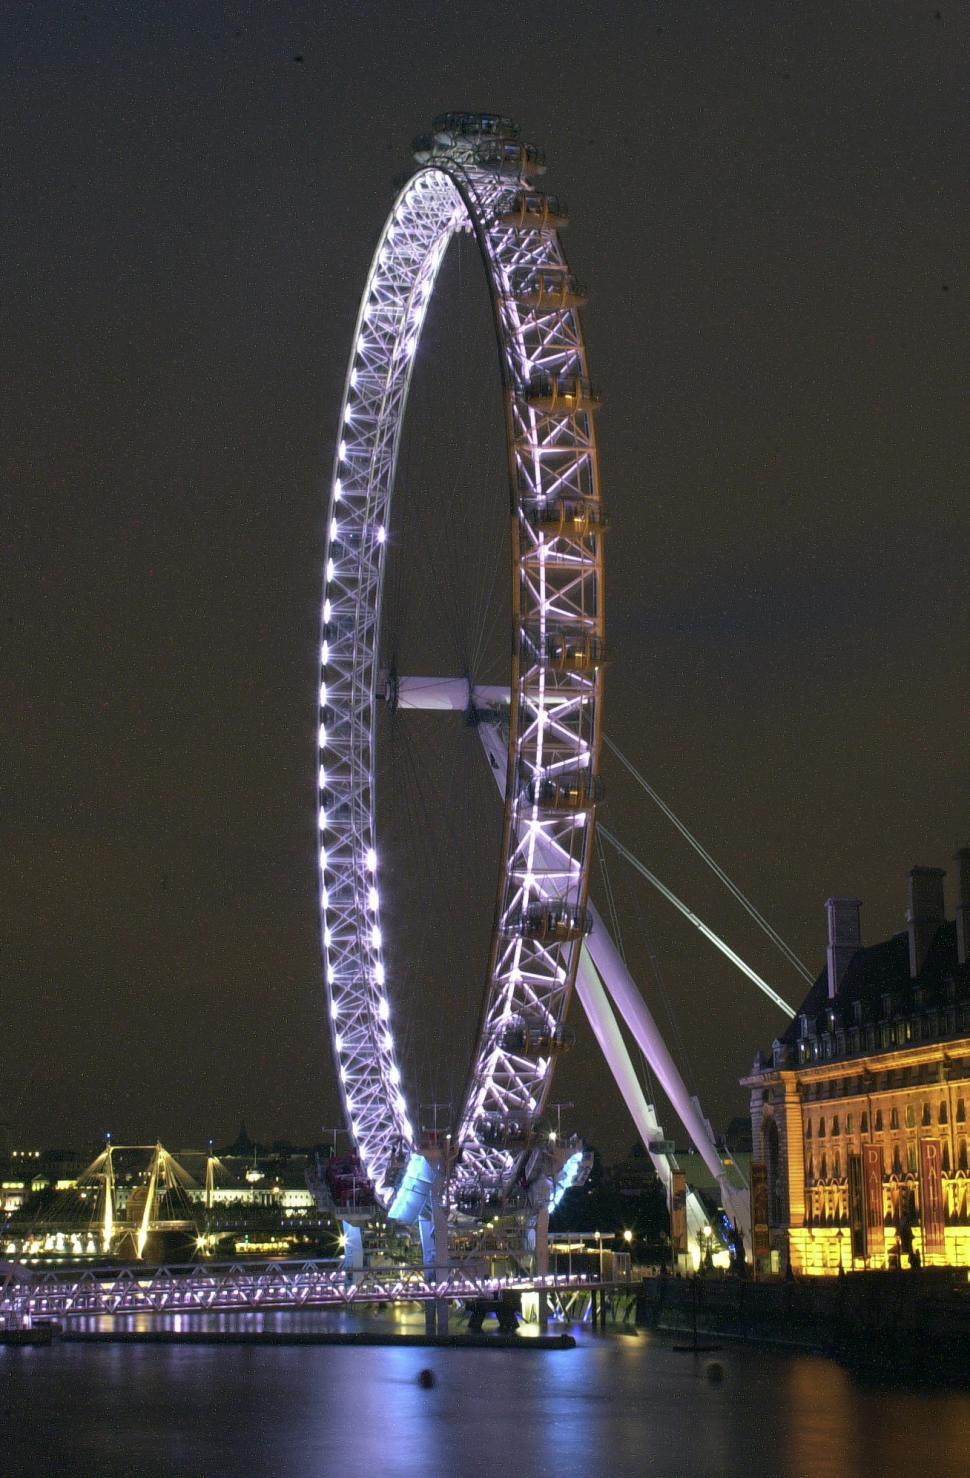 Free Image of London Eye at night 